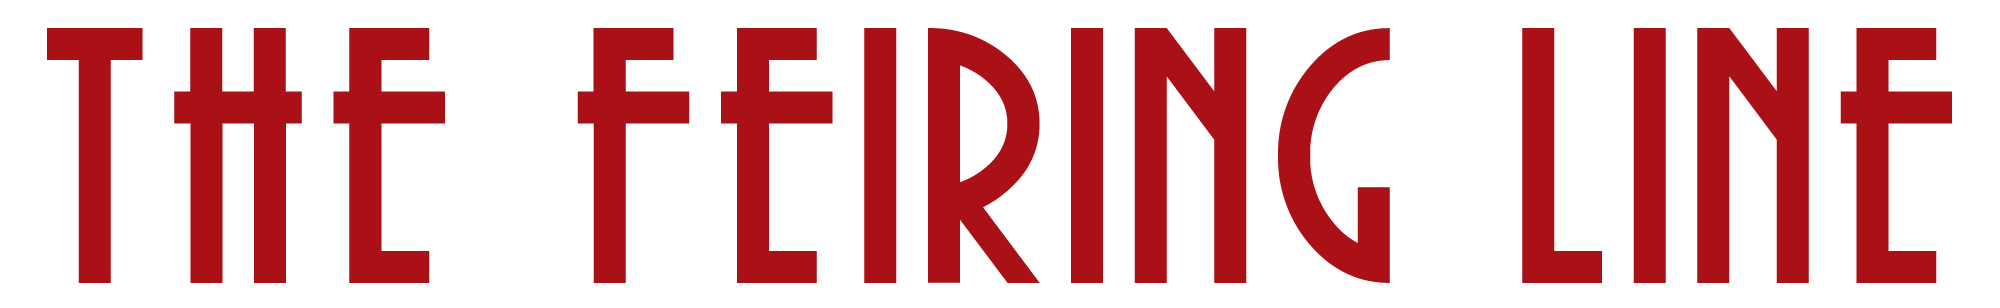 the-feiring-line-logo.png